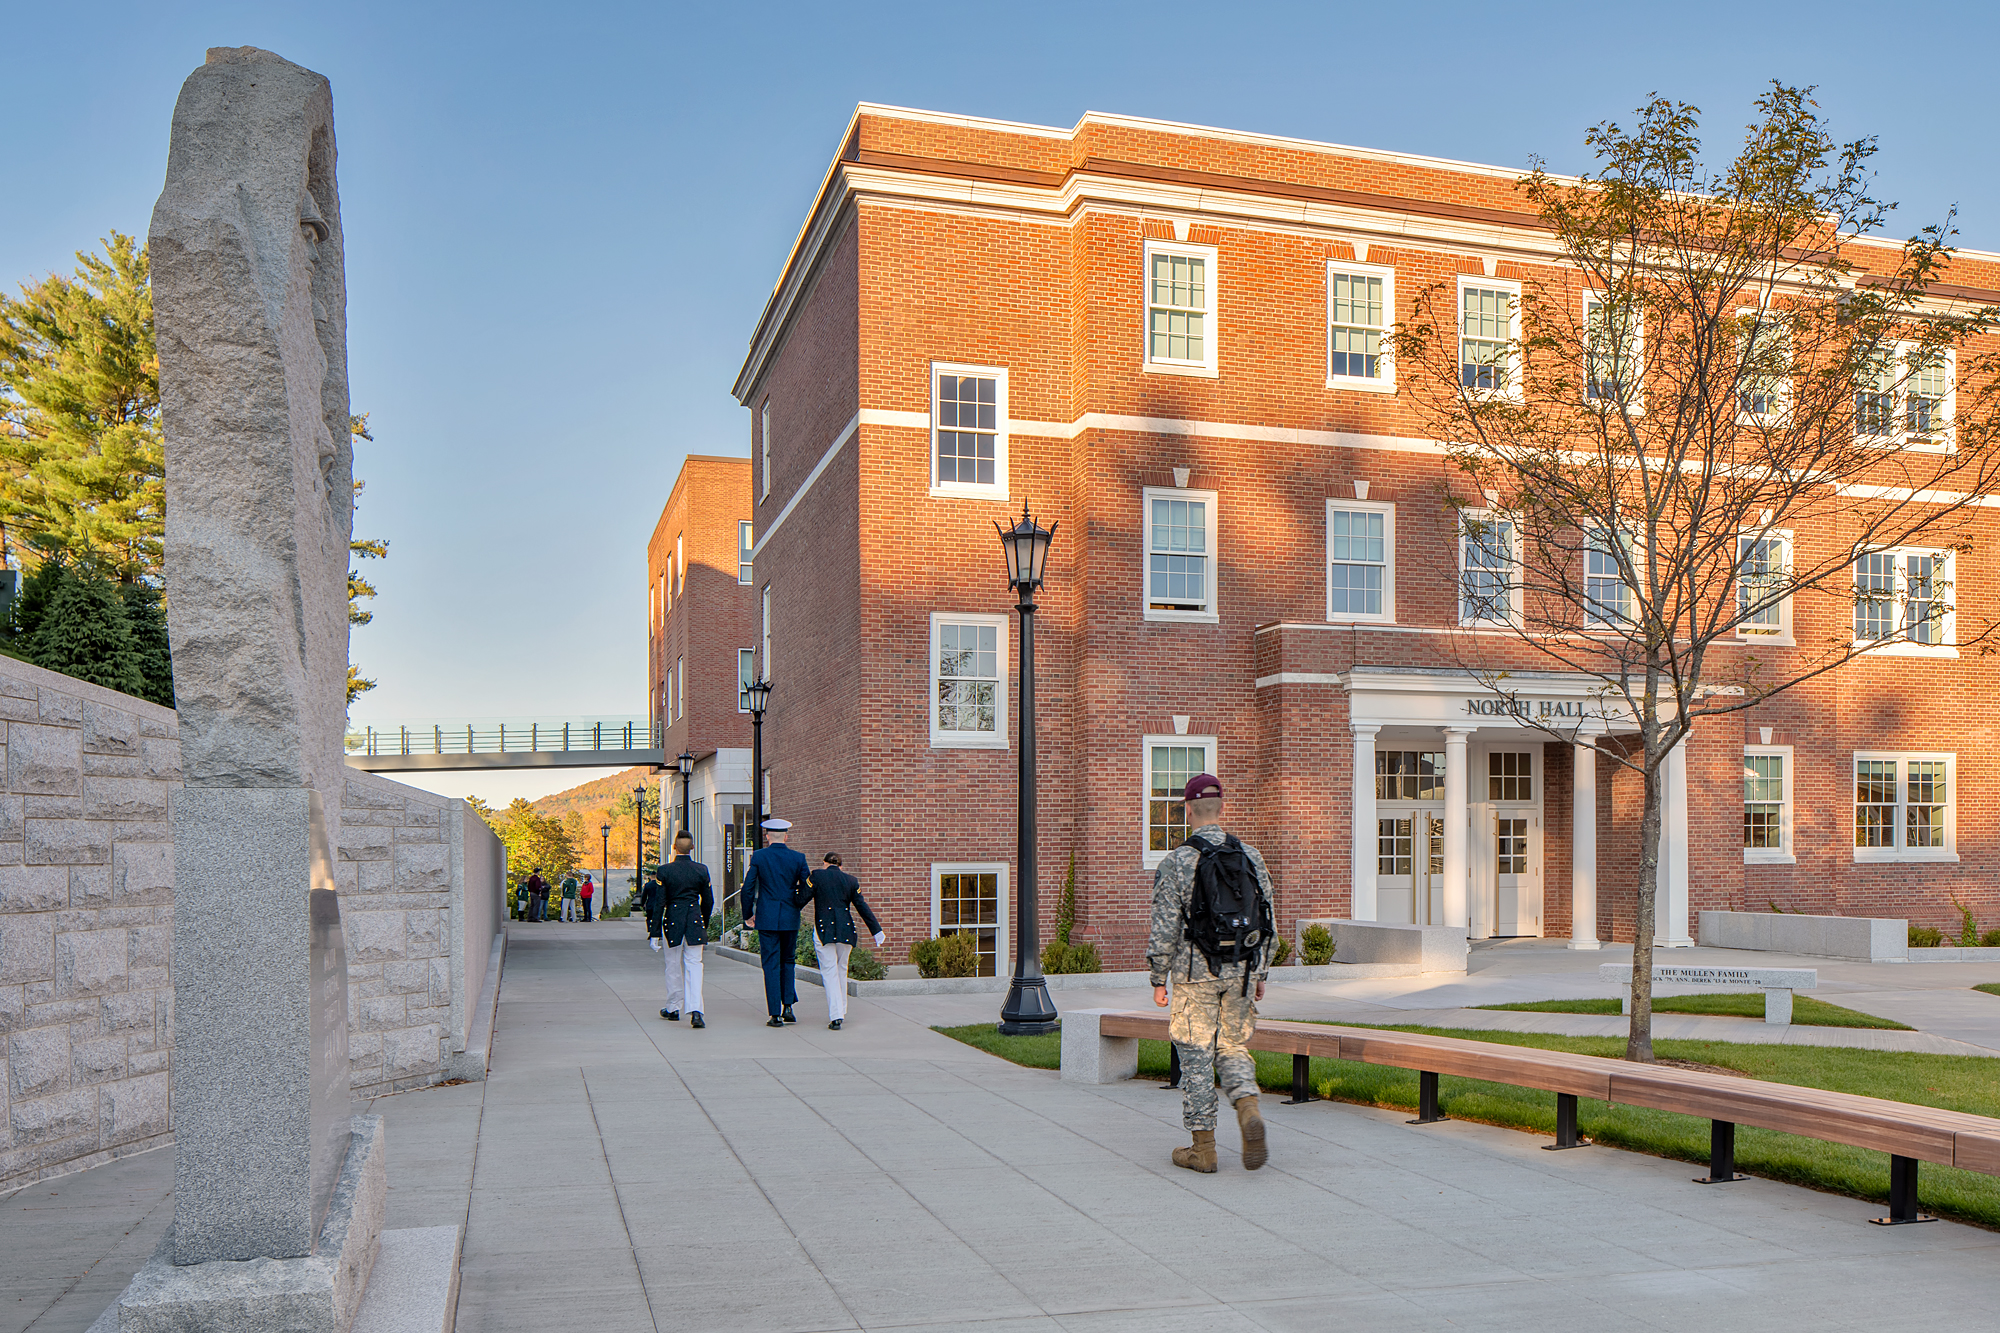 Reinvigorating the Academic Campus Core